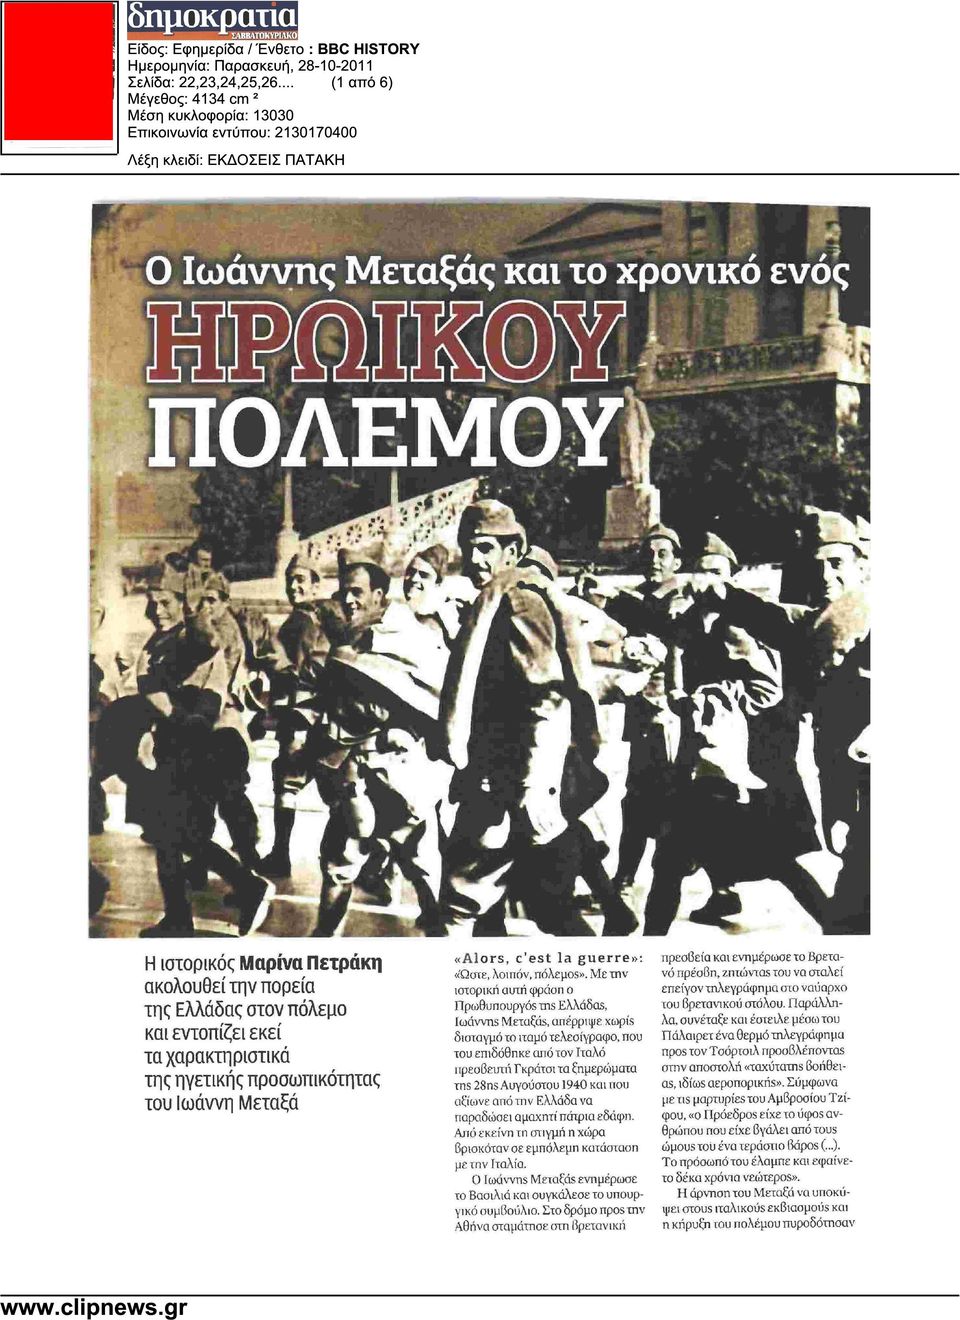 Με την ιστορική αυτή φράση ο Πρωθυπουργός της Ελλάδας, Ιωάννης Μεταξάς, απέρριψε χωρίς δισταγµό το ιταµό τελεσίγραφο, που του επιδόθηκε από τον Ιταλό πρεσβευτή Γκράτσι τα ξηµερώµατα της 28ης